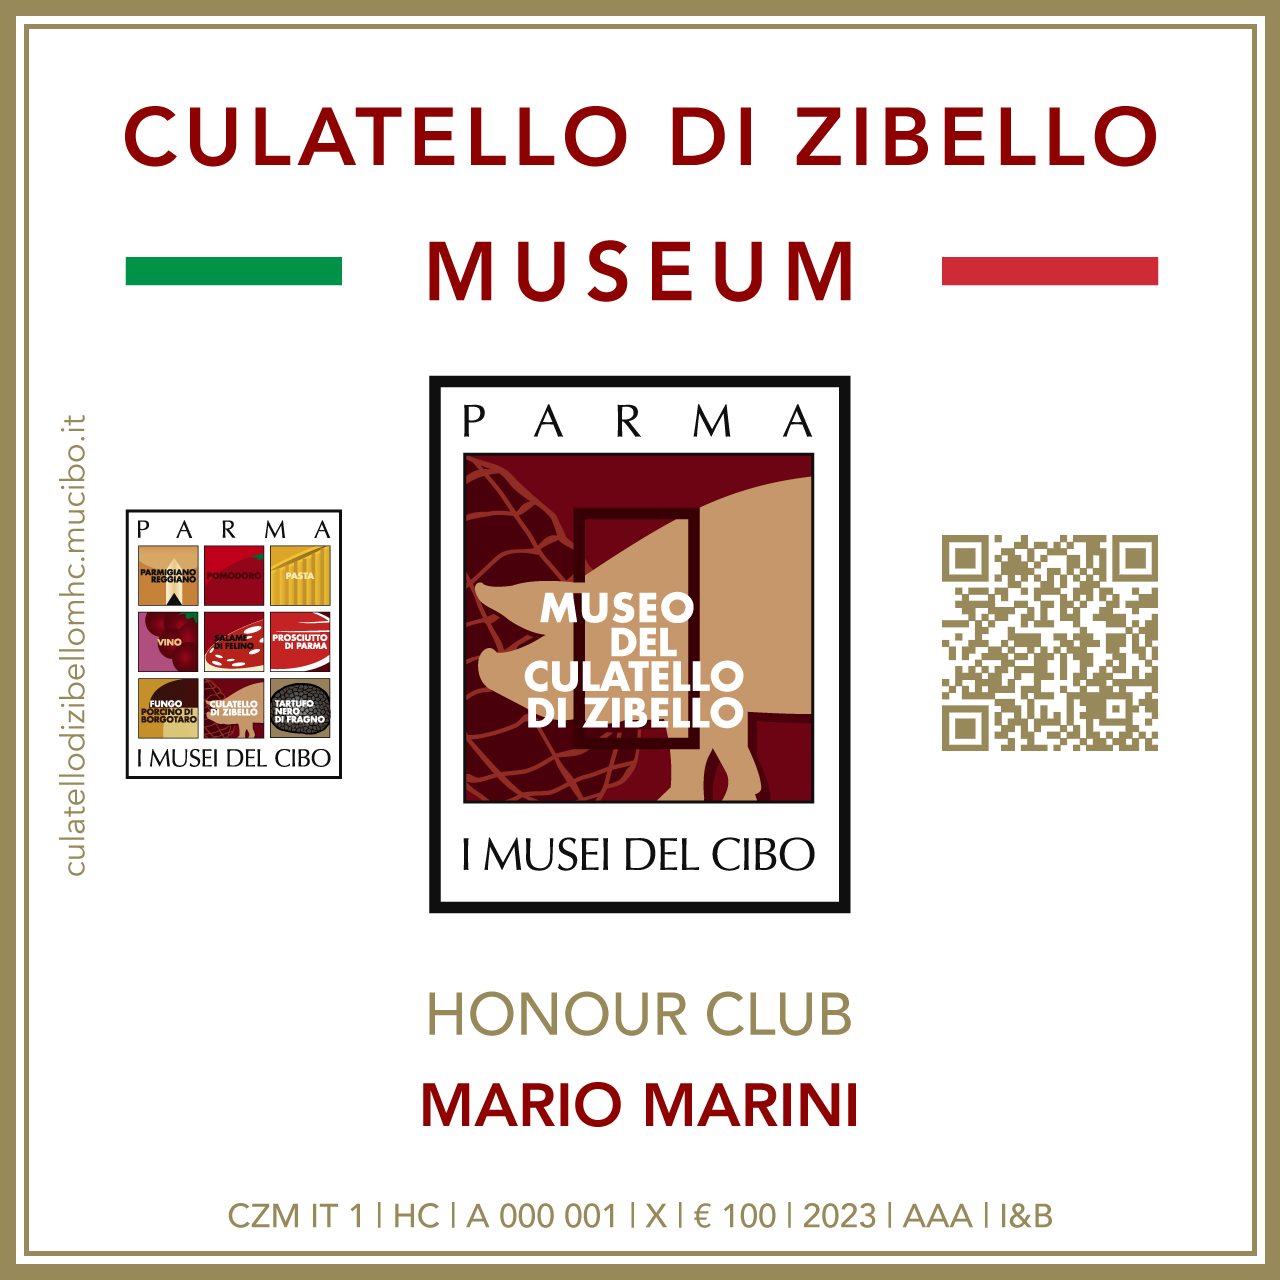 Culatello di Zibello Museum Honour Club - Token Id A 000 001 - MARIO MARINI